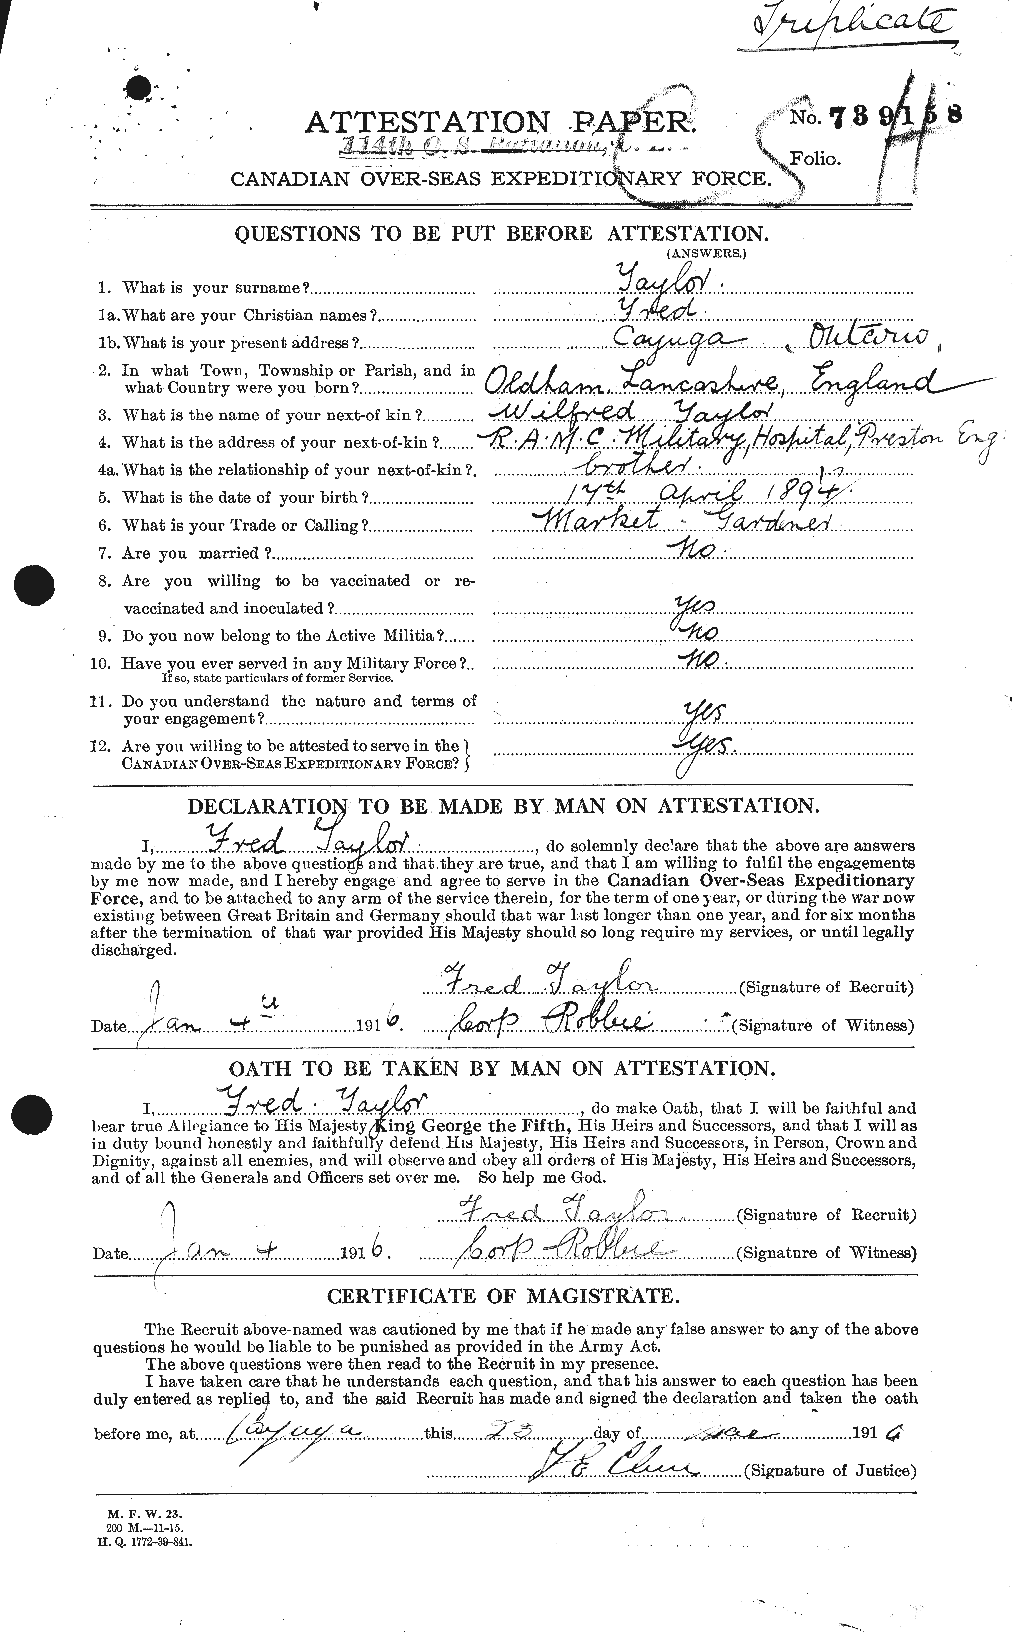 Dossiers du Personnel de la Première Guerre mondiale - CEC 625746a